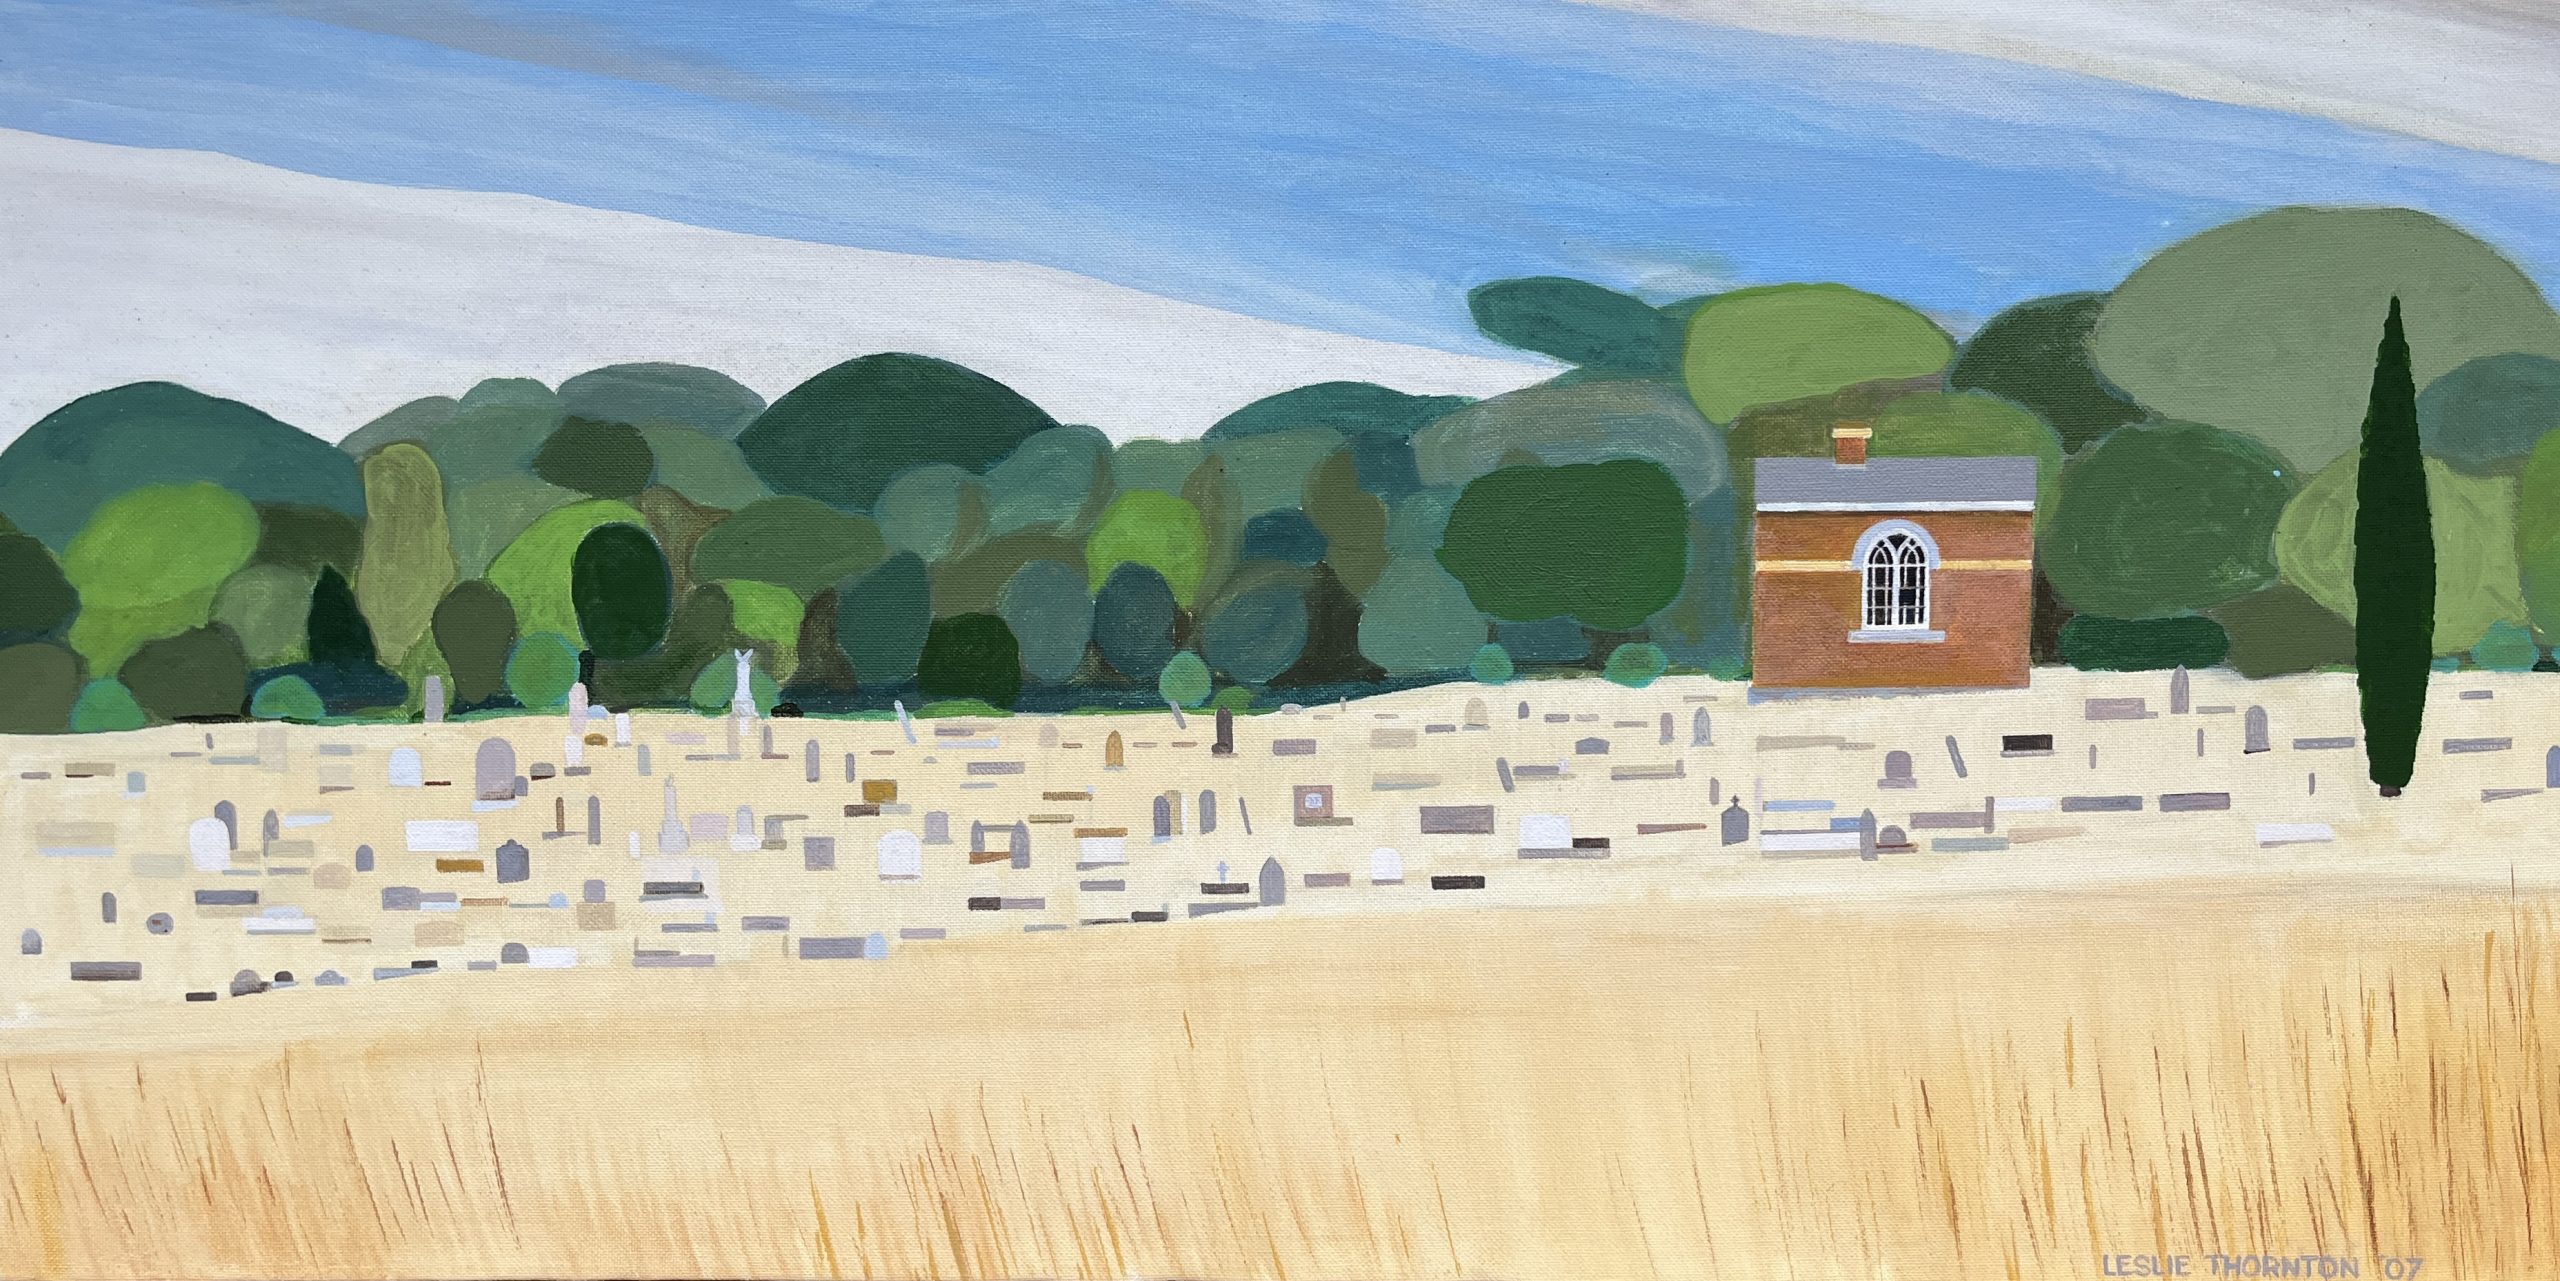 Painting 2007 Chewton Cemetery Leslie Thornton 40cm x 80cm oil on canvas